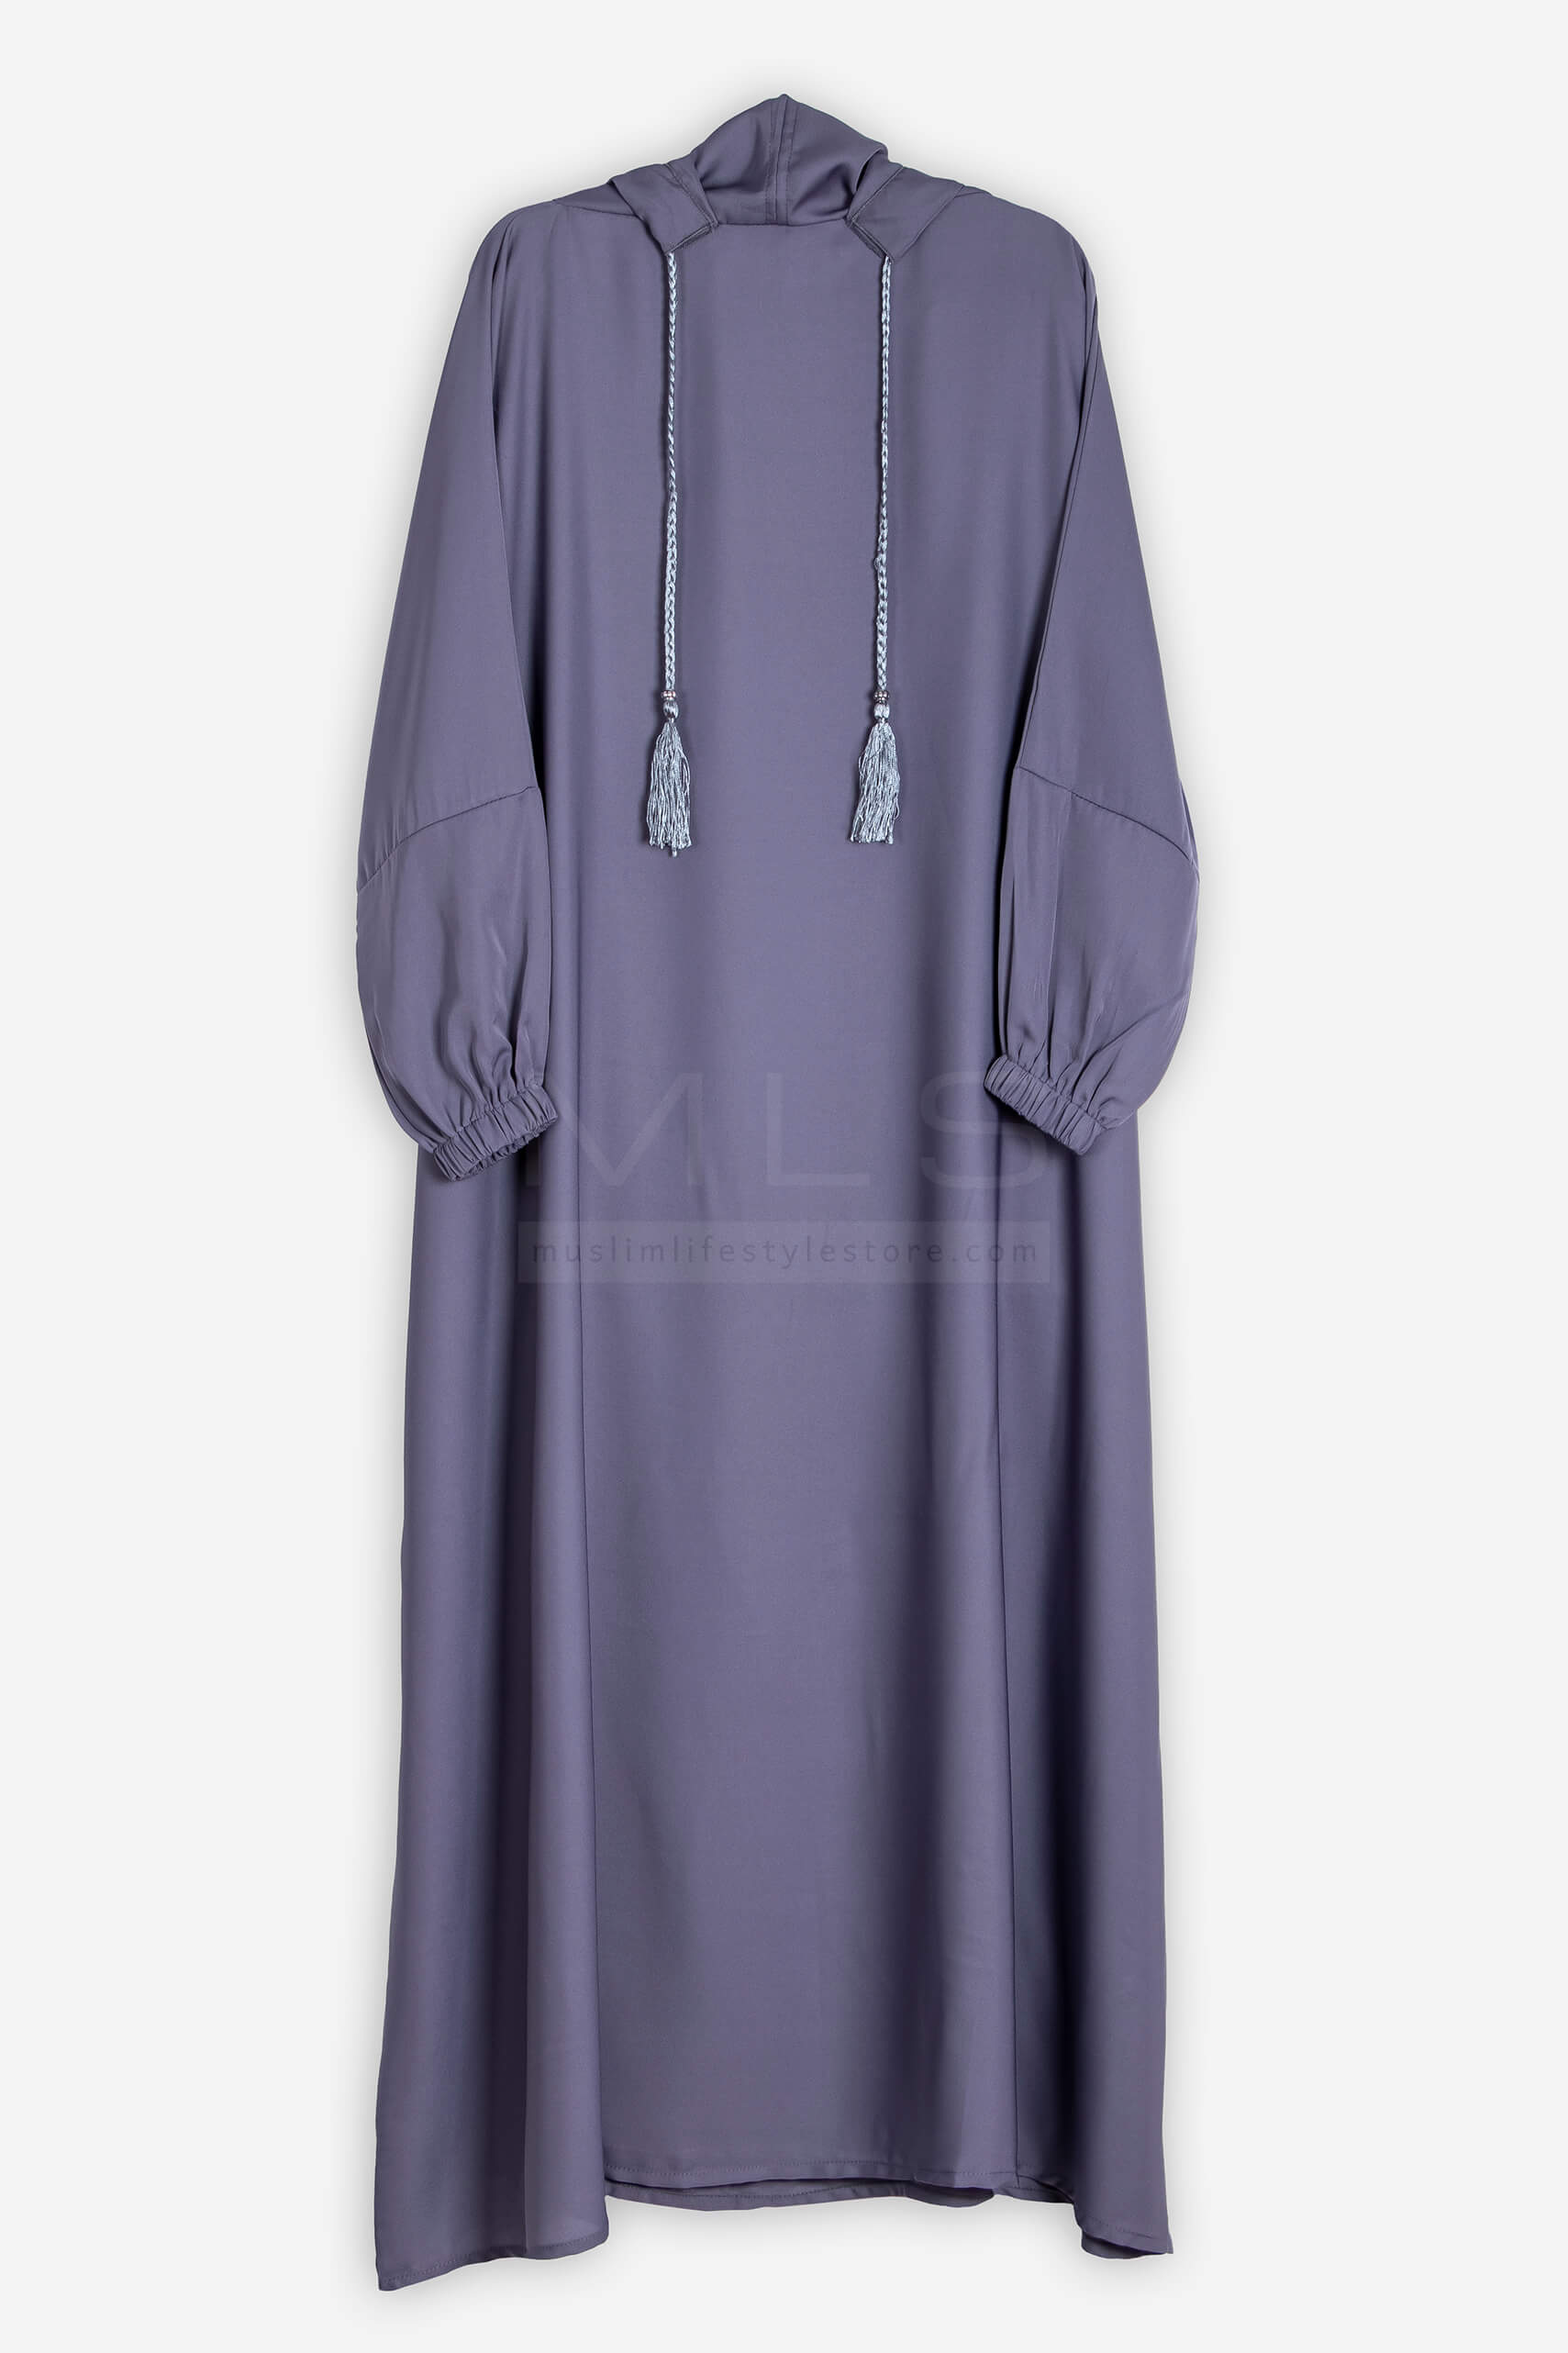 Gray Stylish Cap Jilbab - Jilbab - Muslim Lifestyle Store